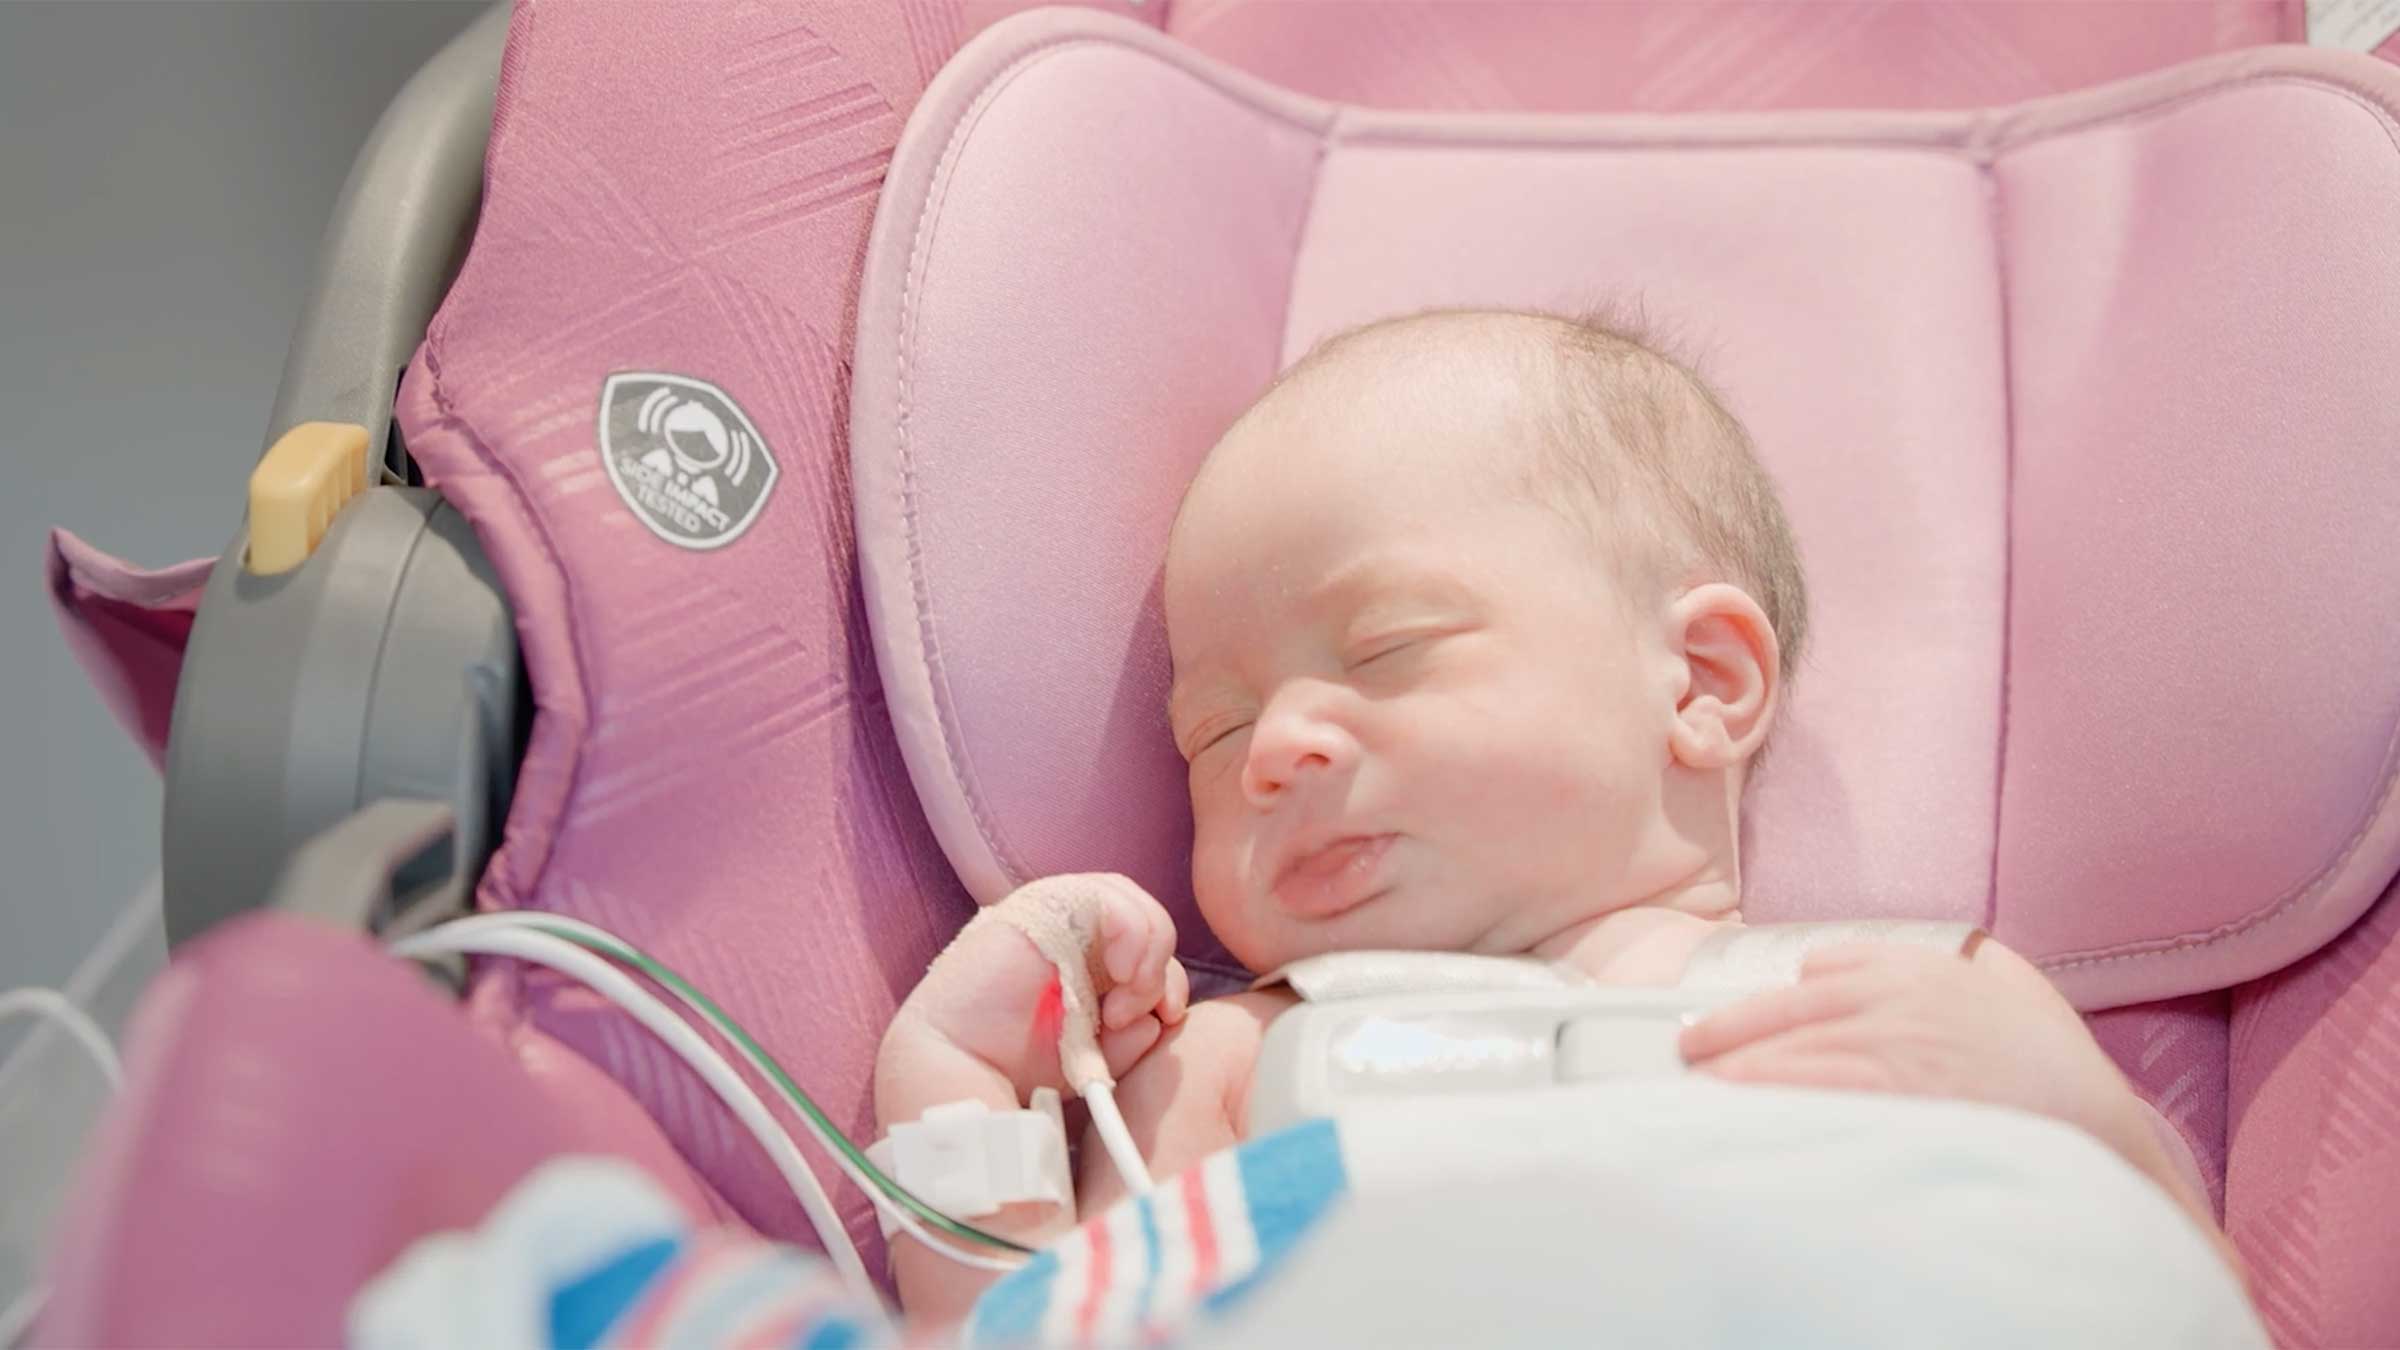 A newborn in a car seat attached to a cardiac monitor